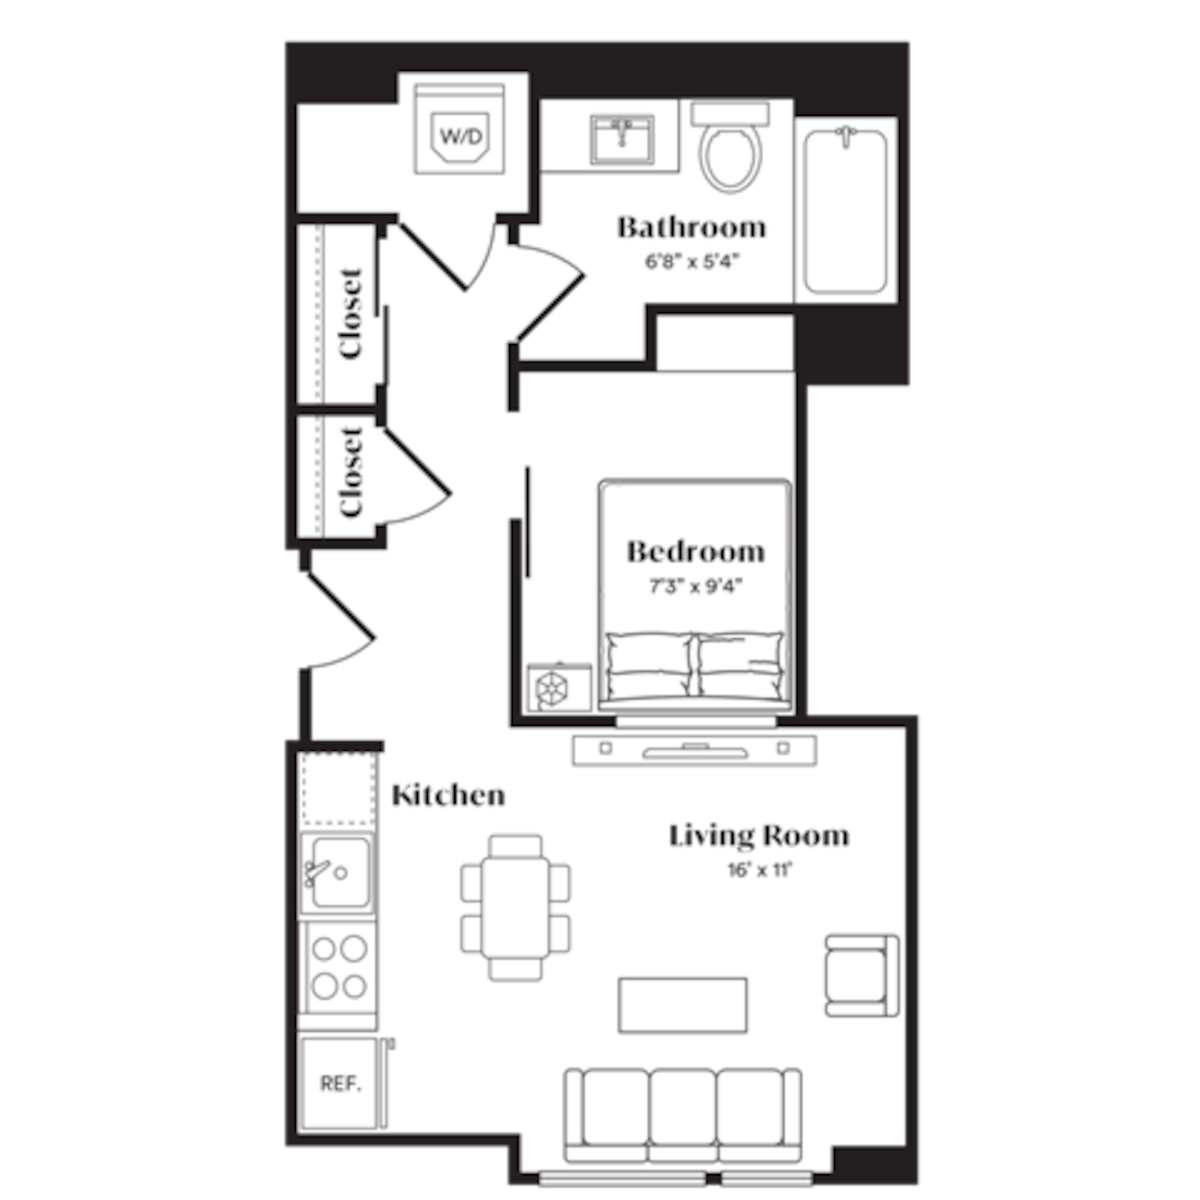 Floorplan diagram for S5, showing Studio